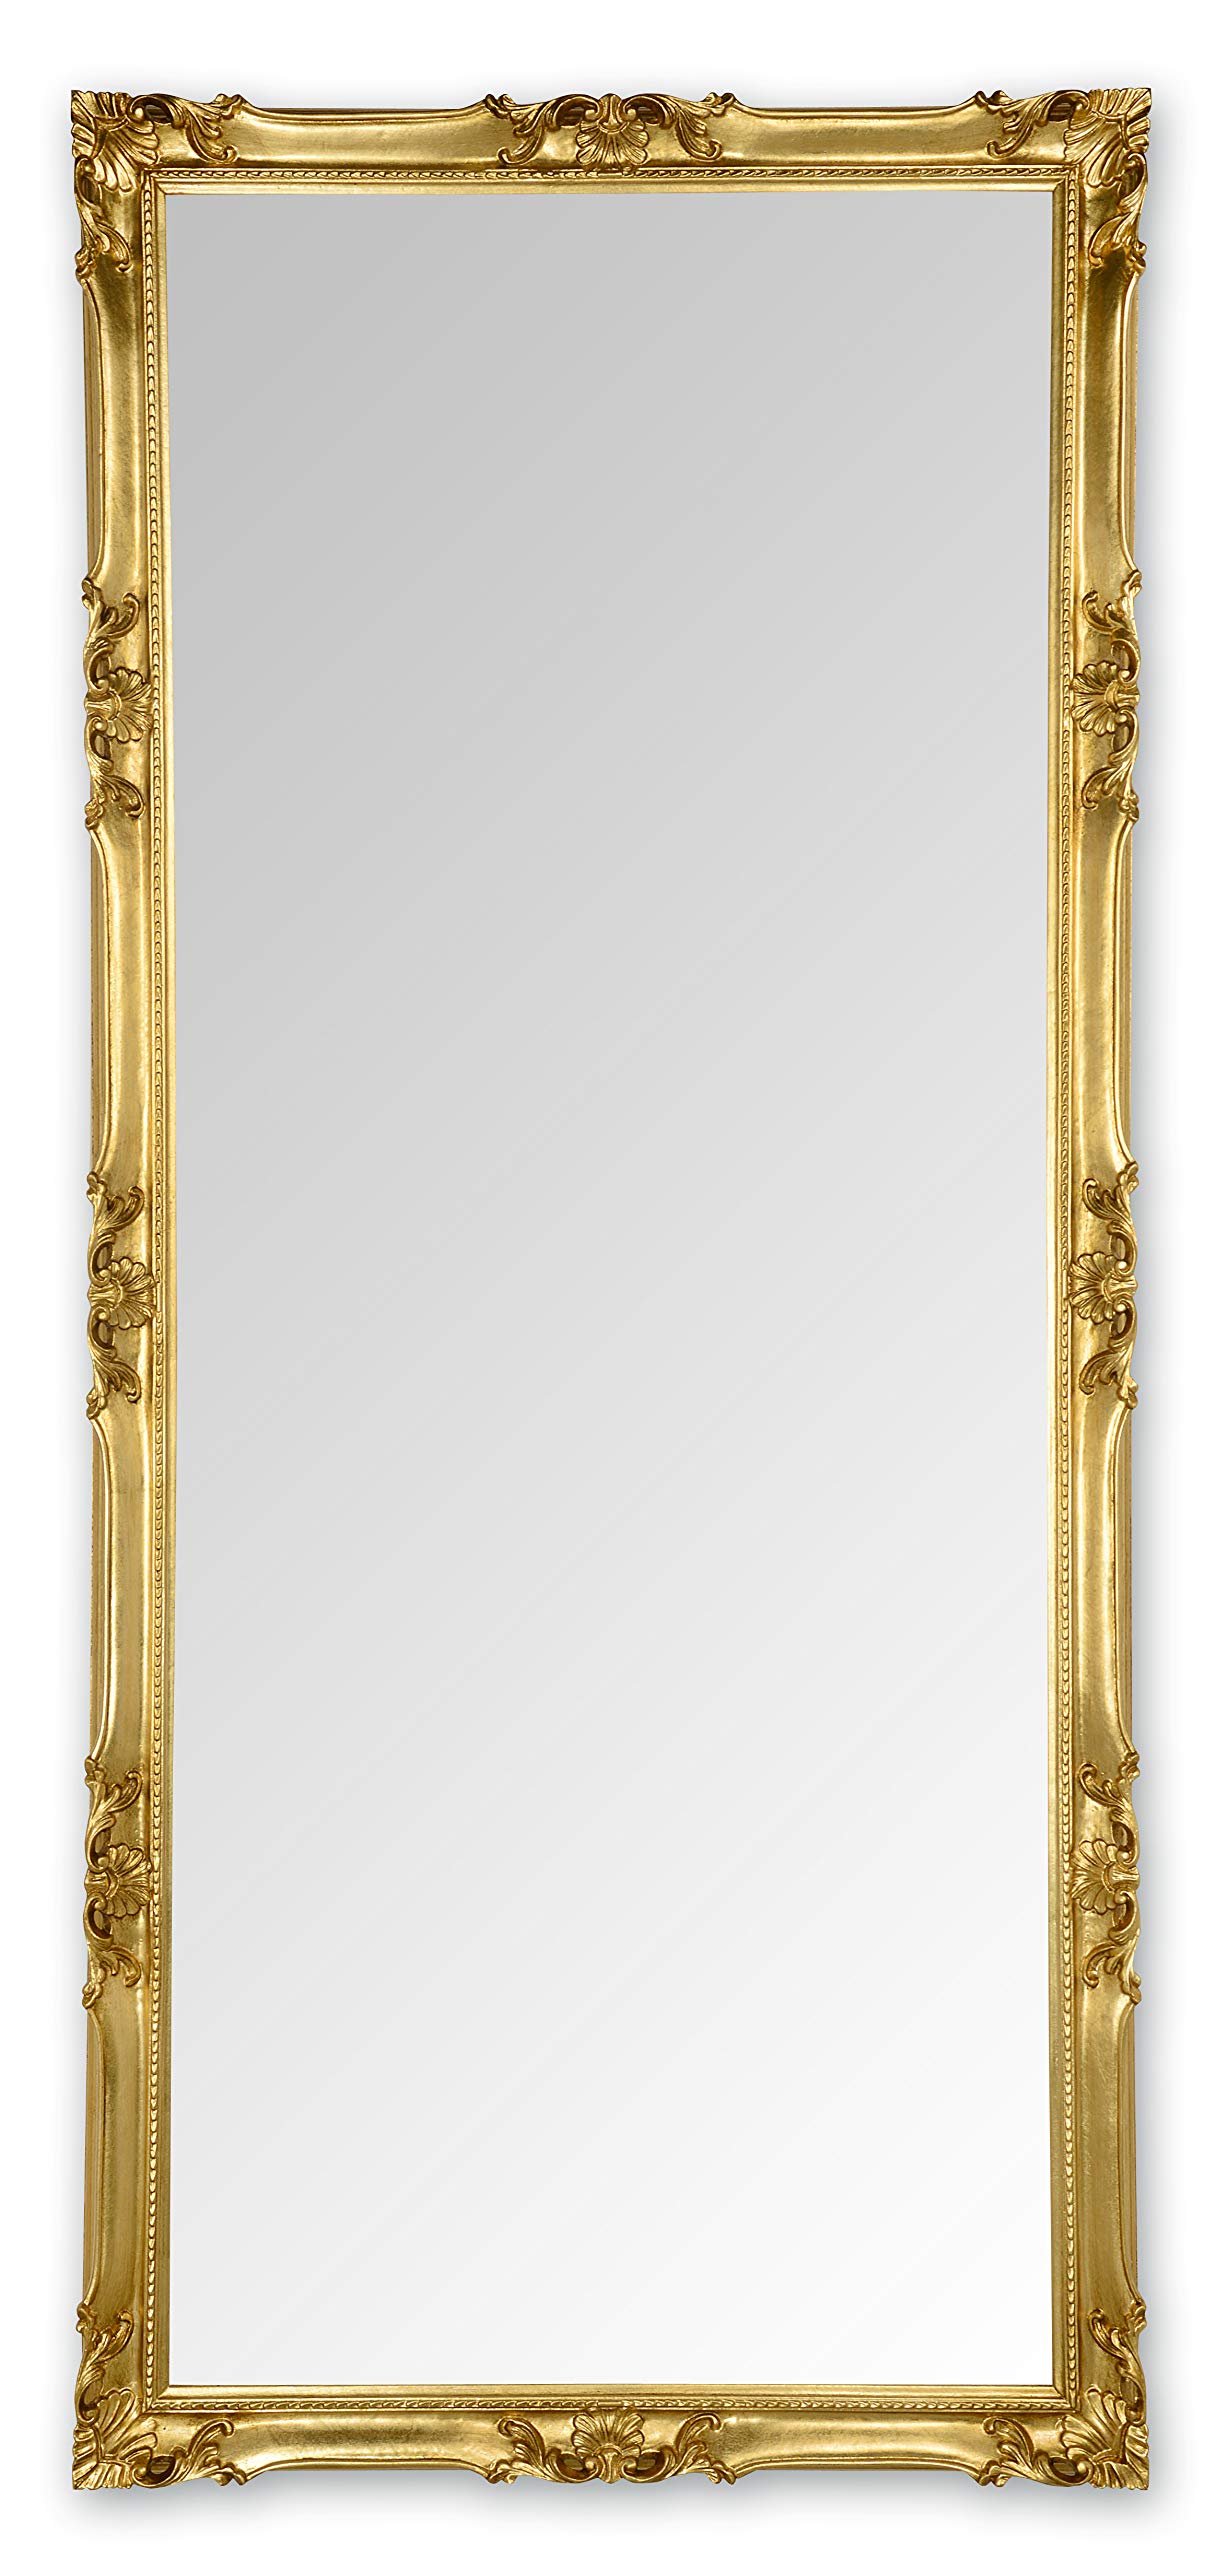 MO.WA Wandspiegel Spiegel klassisch Barock 82x182 Blattgold Ganzkörperspiegel mit Holzrahmen vergoldet Hoch- oder Querformat Spiegel Groß Bodenspiegel Made in Italy.